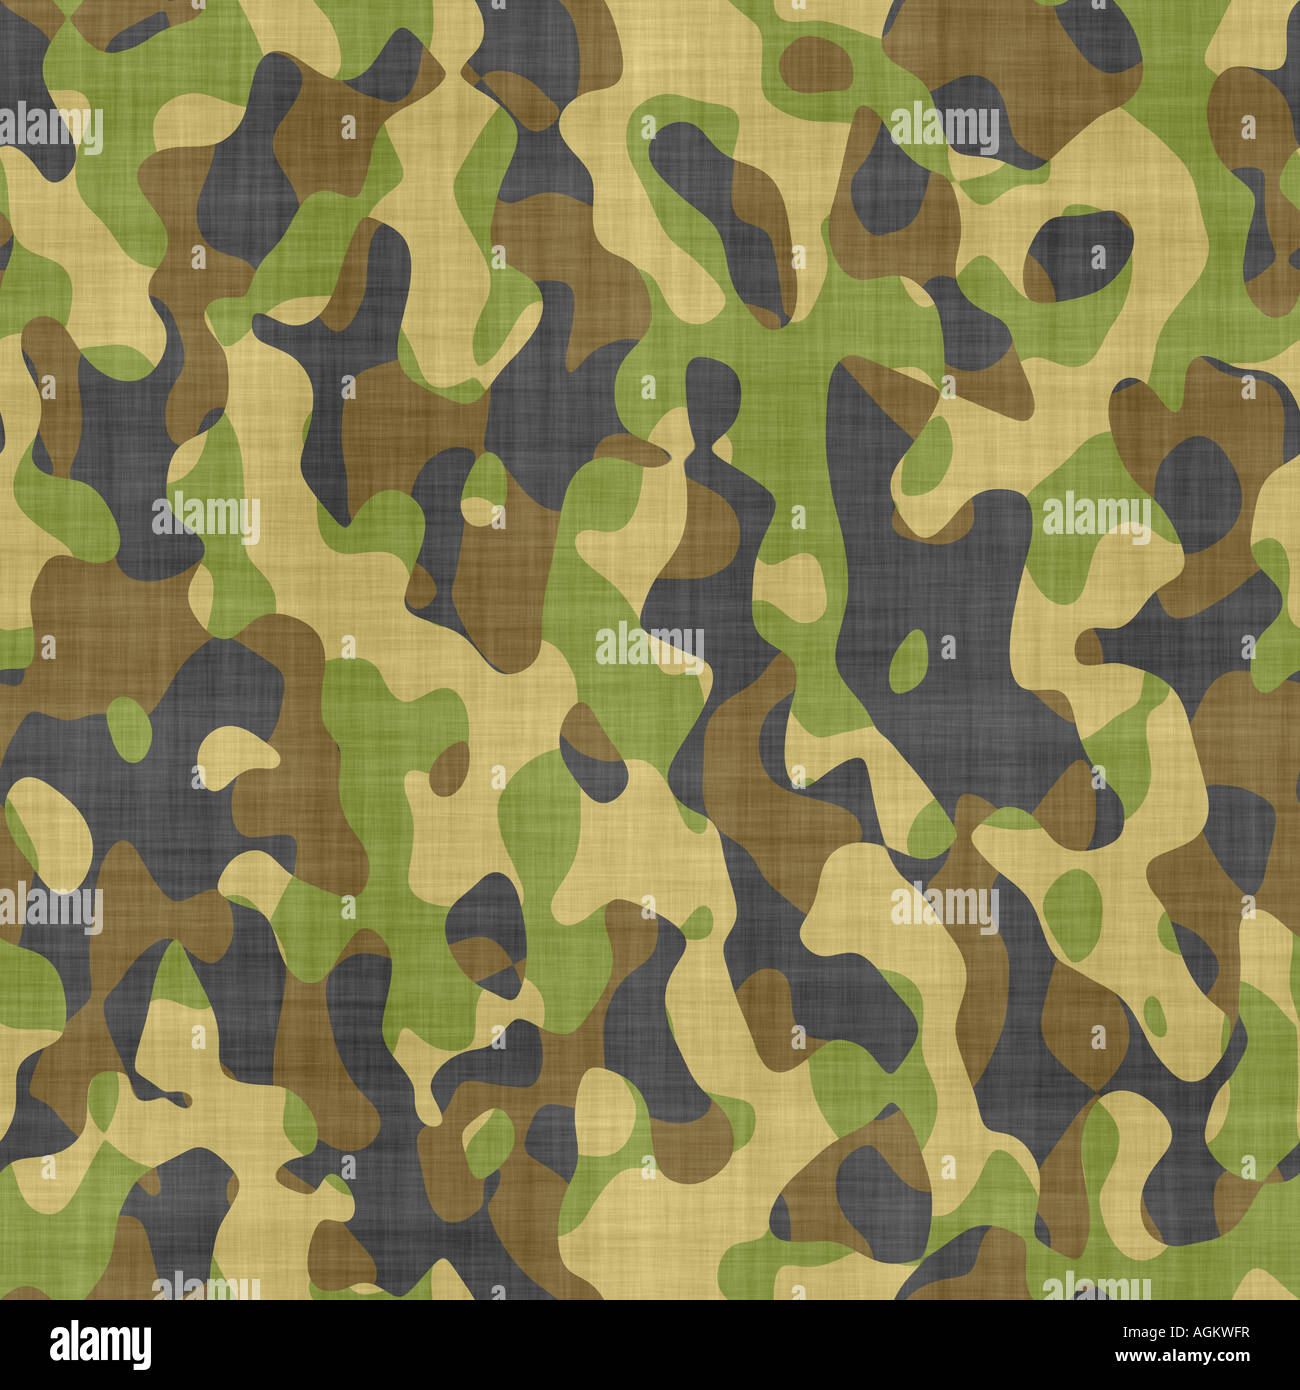 Grand seamless Image de tissu imprimé avec motif de camouflage militaire Banque D'Images